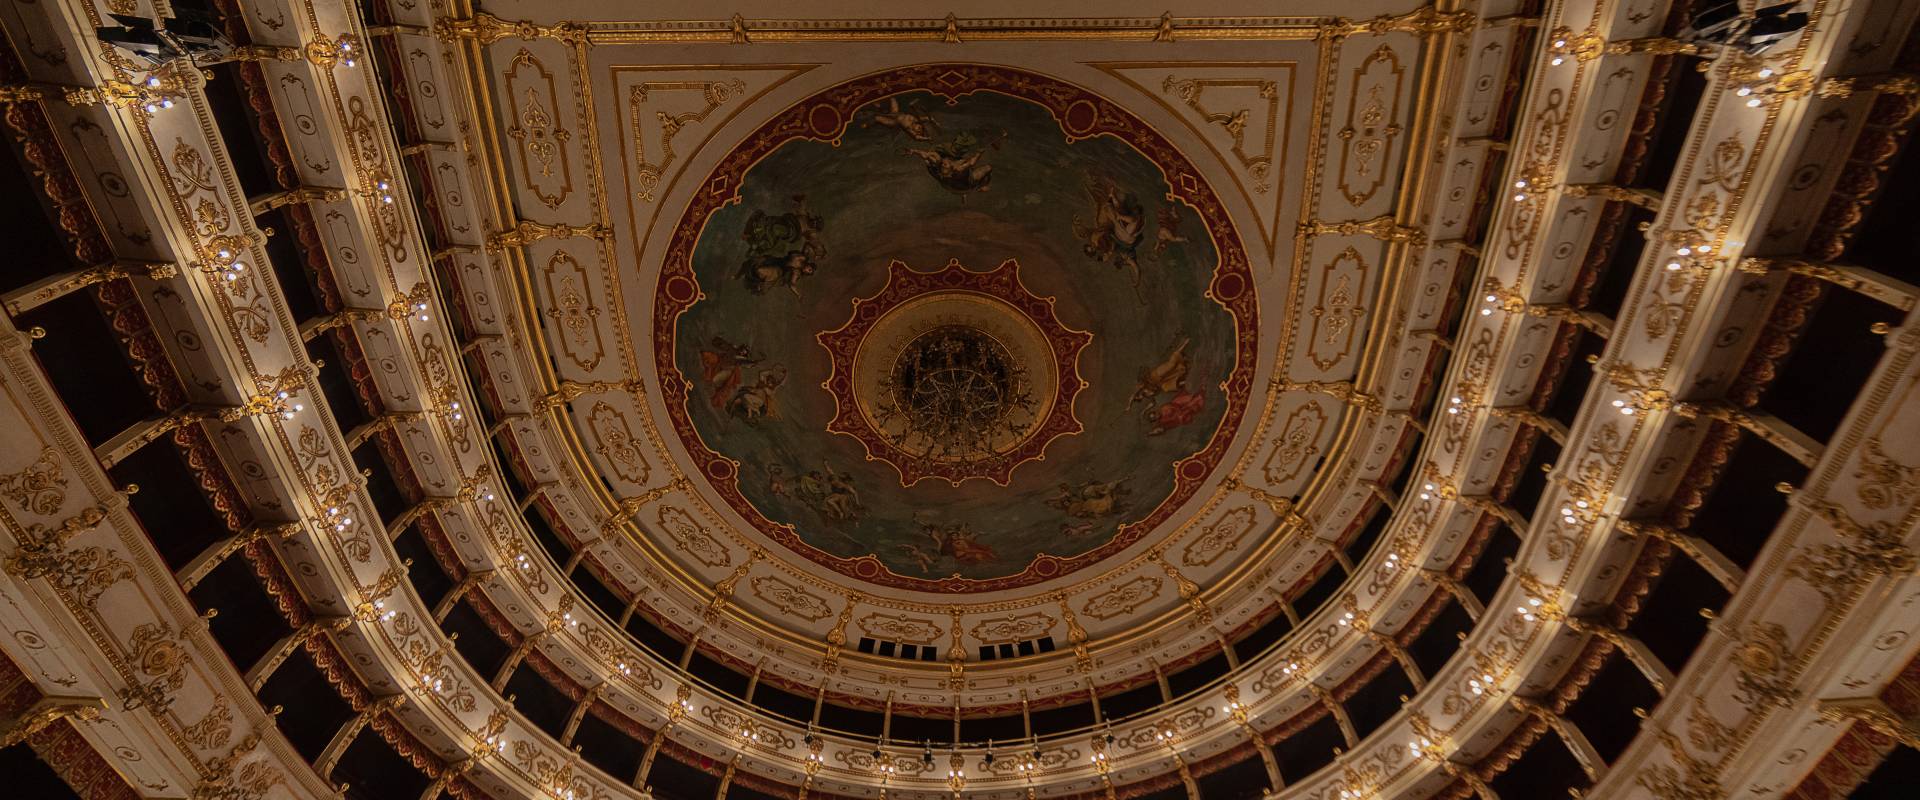 Il Soffitto Affrescato Teatro Regio Parma foto di Maurizio Moro515